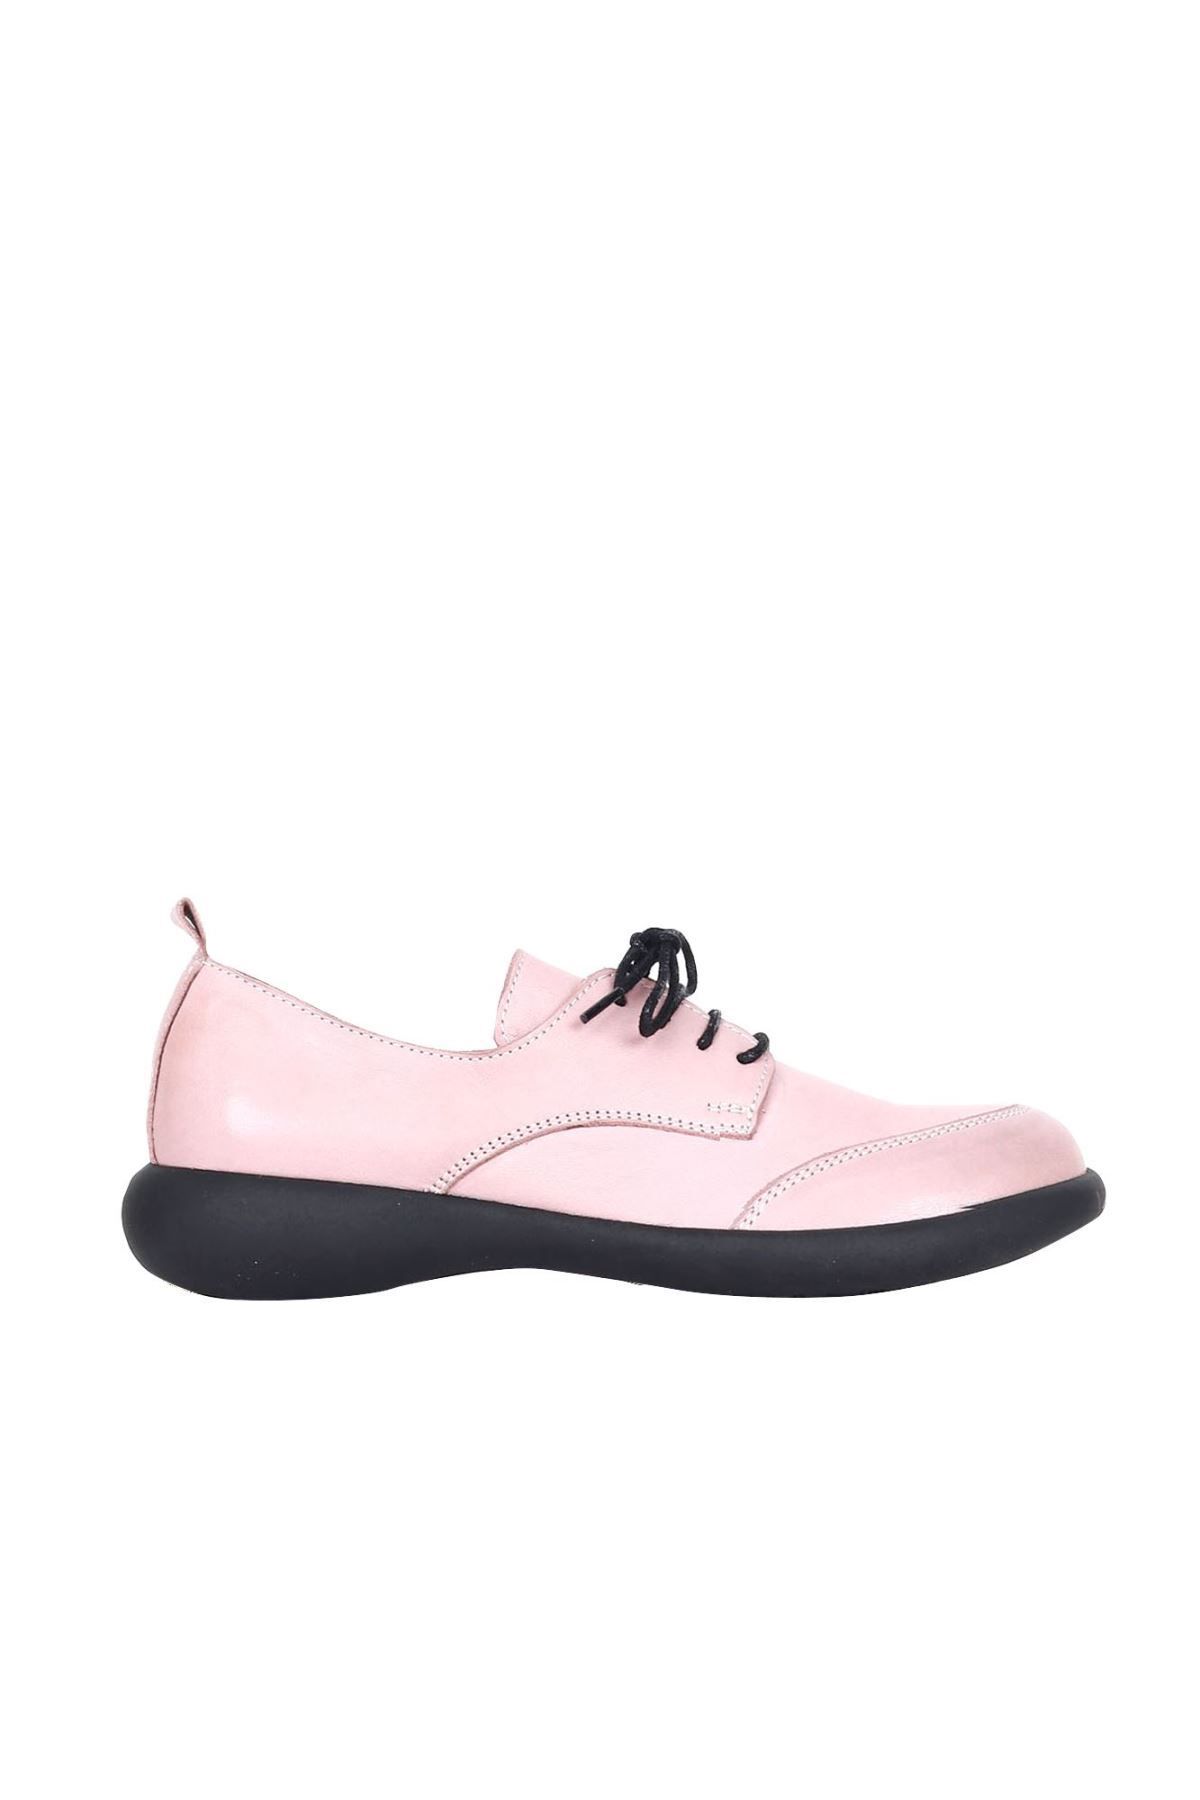 Bueno Shoes Gül Kurusu Deri Kadın Dolgu Topuklu Ayakkabı